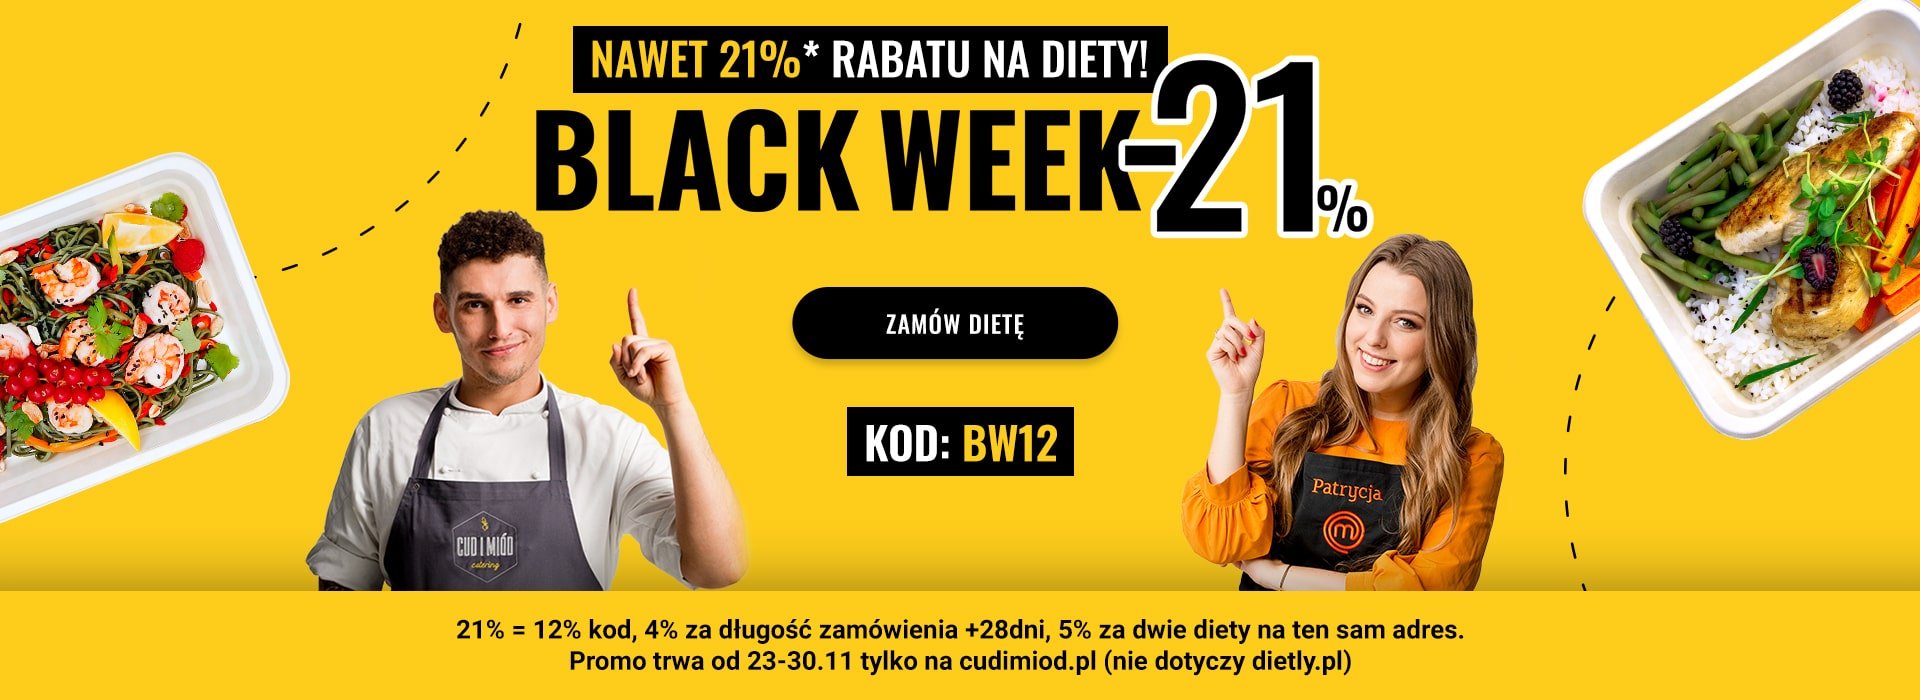 Blackweek